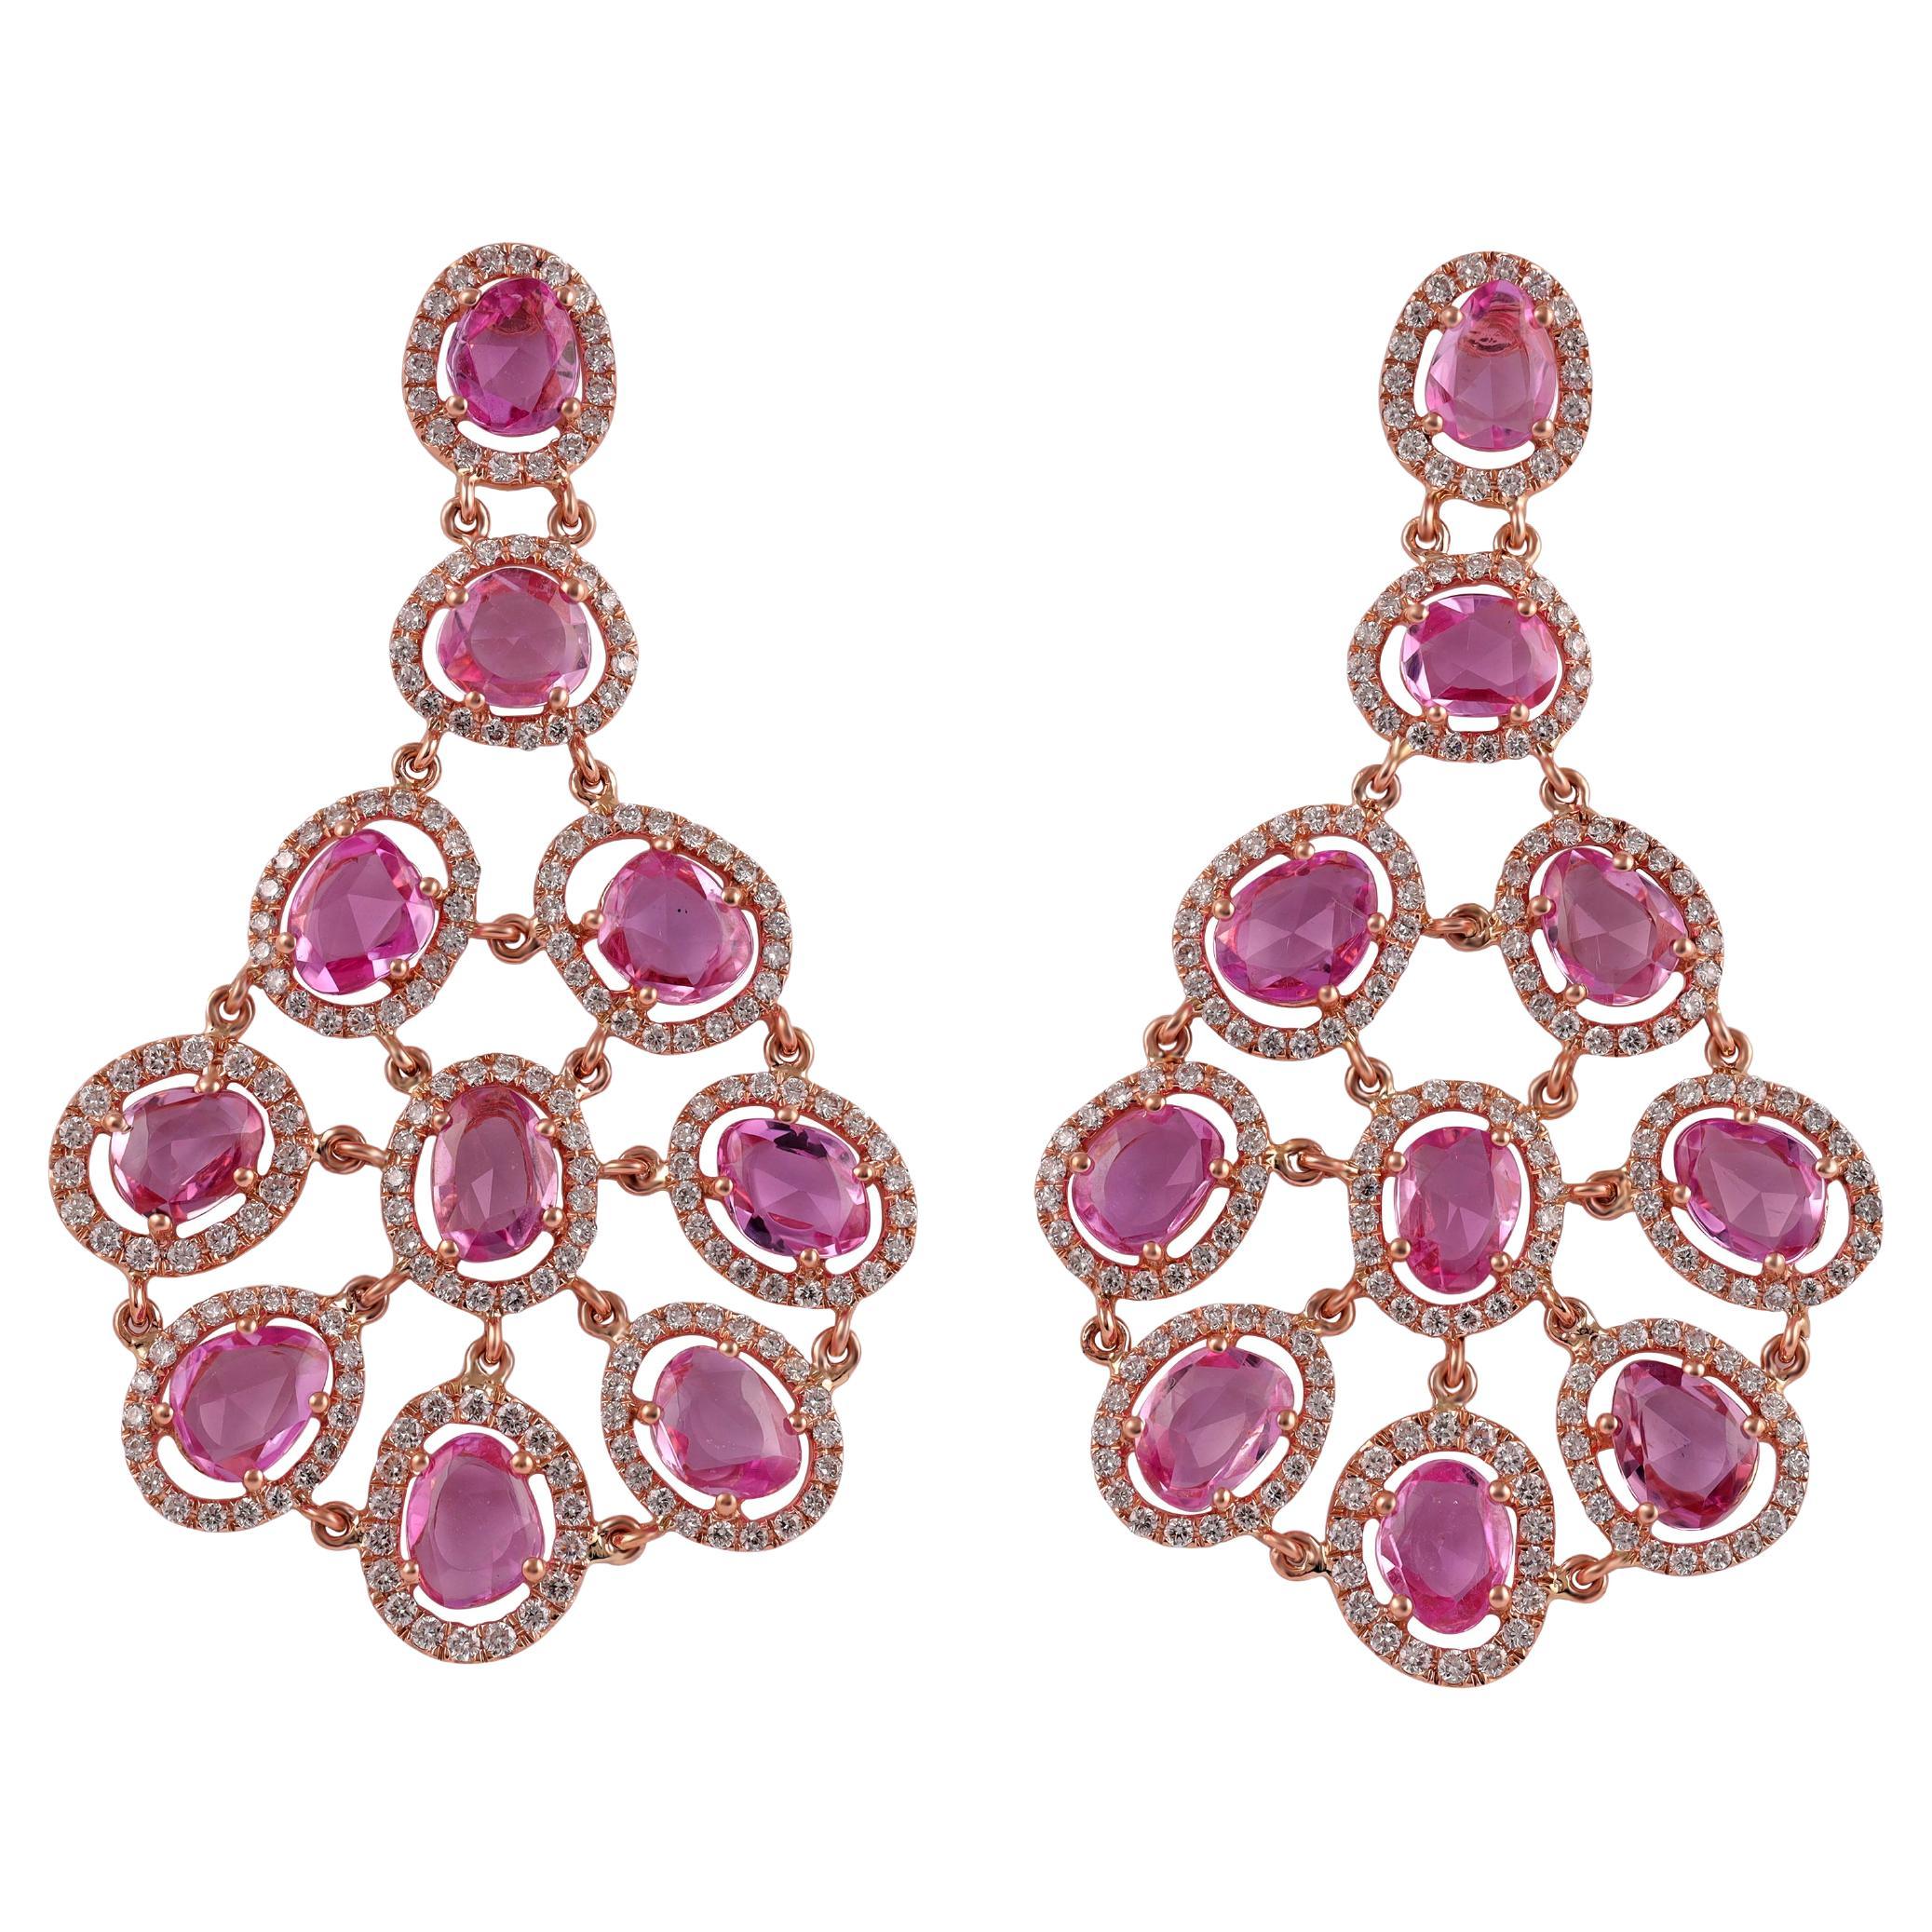 10.68 Carat Pink Sapphire & Diamonds Long Earrings in 18k Gold For Sale